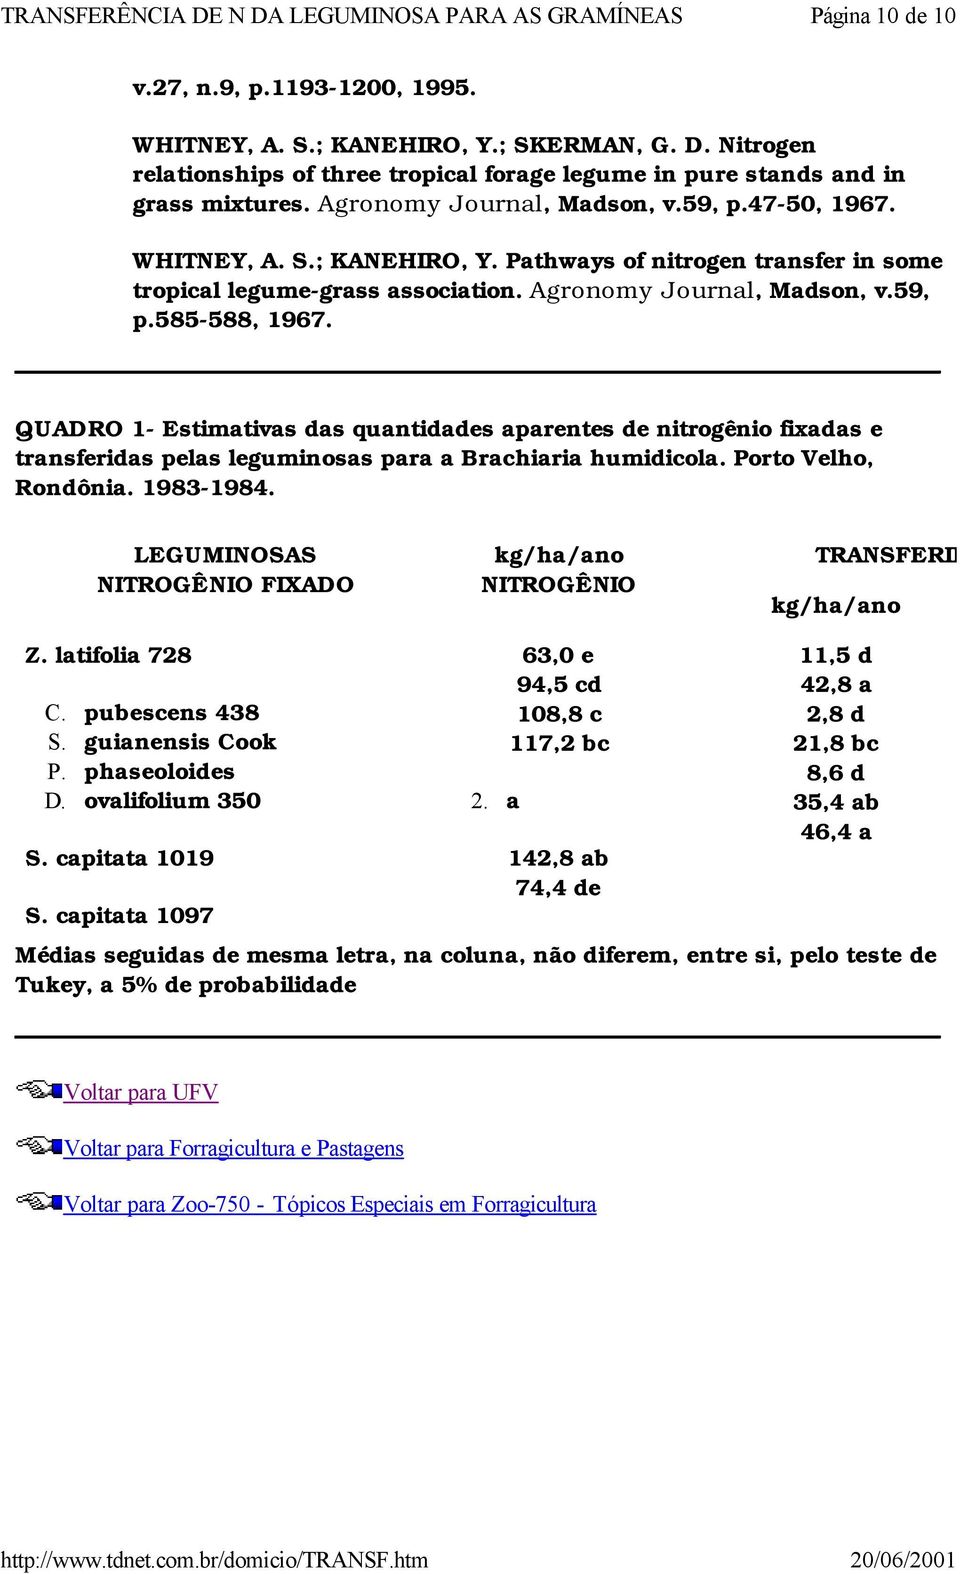 QUADRO 1- Estimativas das quantidades aparentes de nitrogênio fixadas e transferidas pelas leguminosas para a Brachiaria humidicola. Porto Velho, Rondônia. 1983-1984.